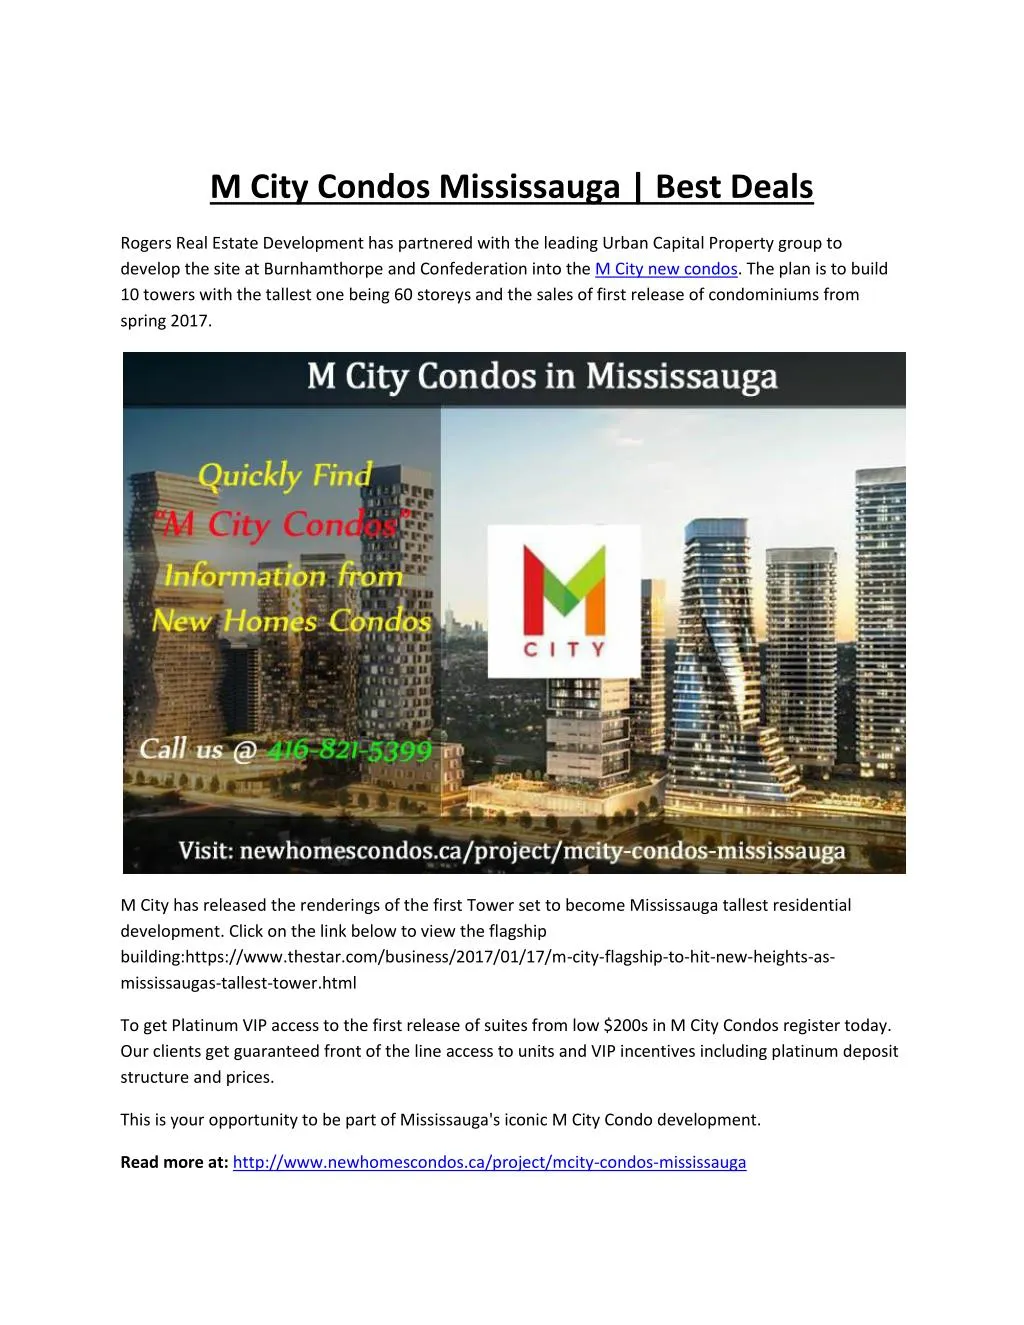 m city condos mississauga best deals